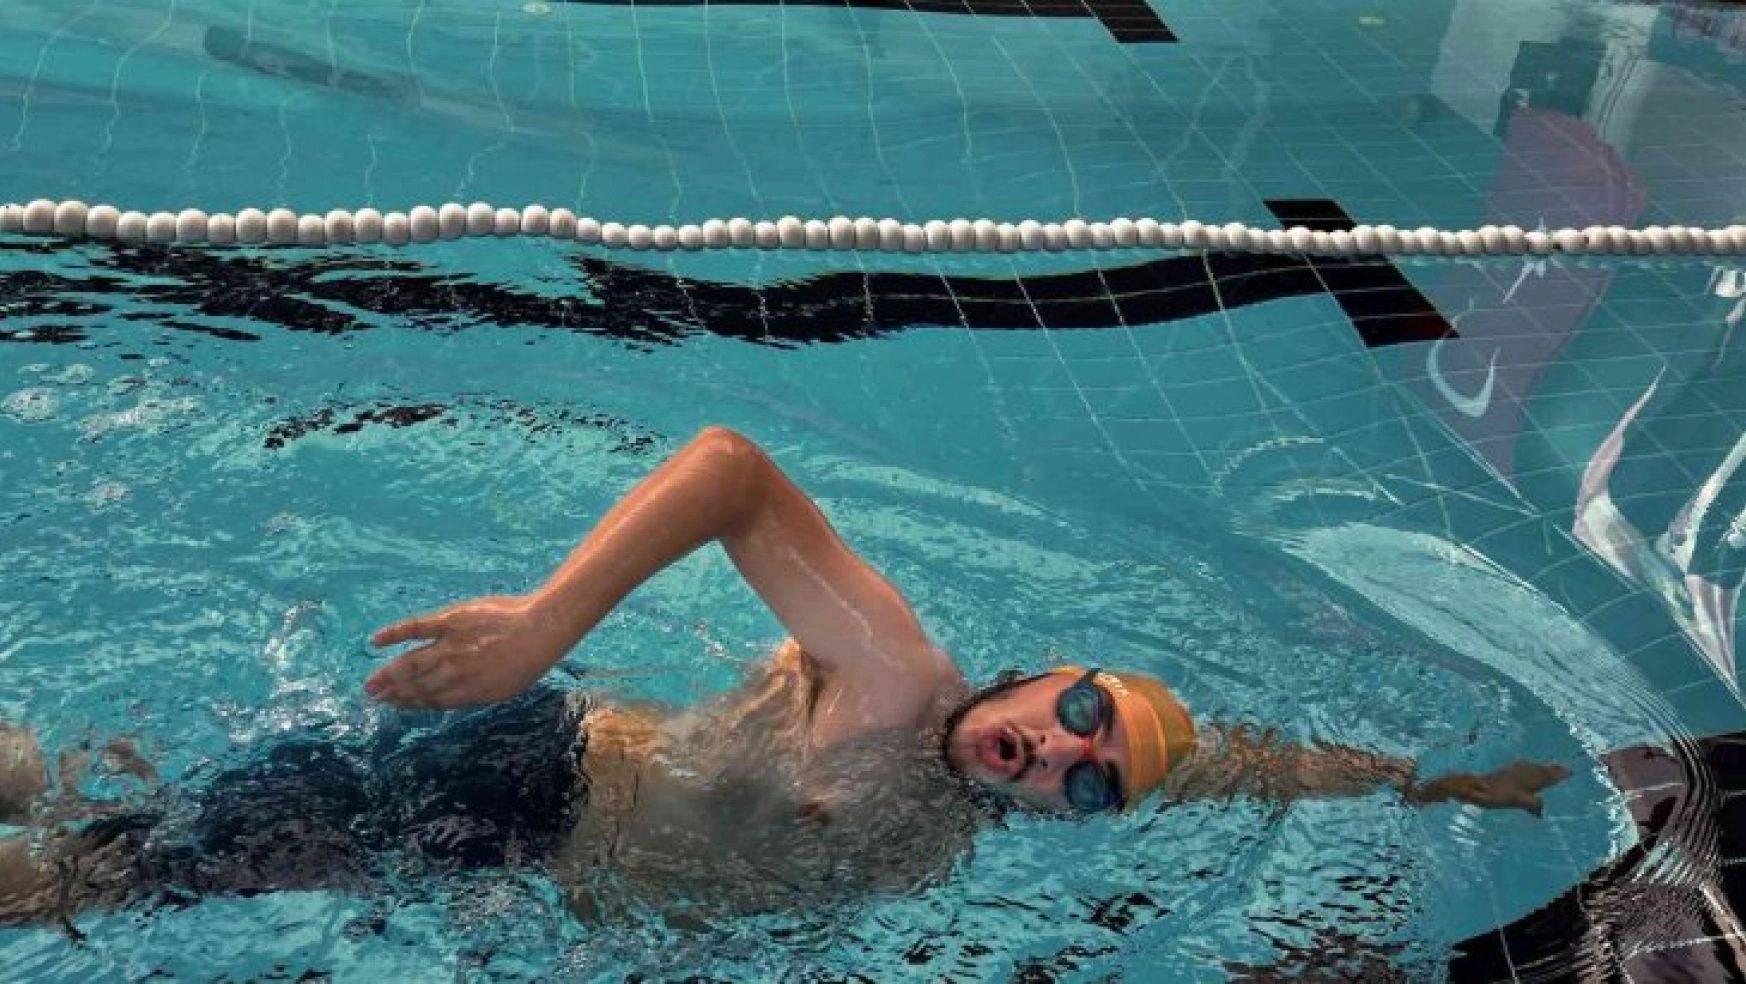 Türkiye birincilikleri bulunan cam kemik hastası yüzücünün hedefi dünya şampiyonluğu